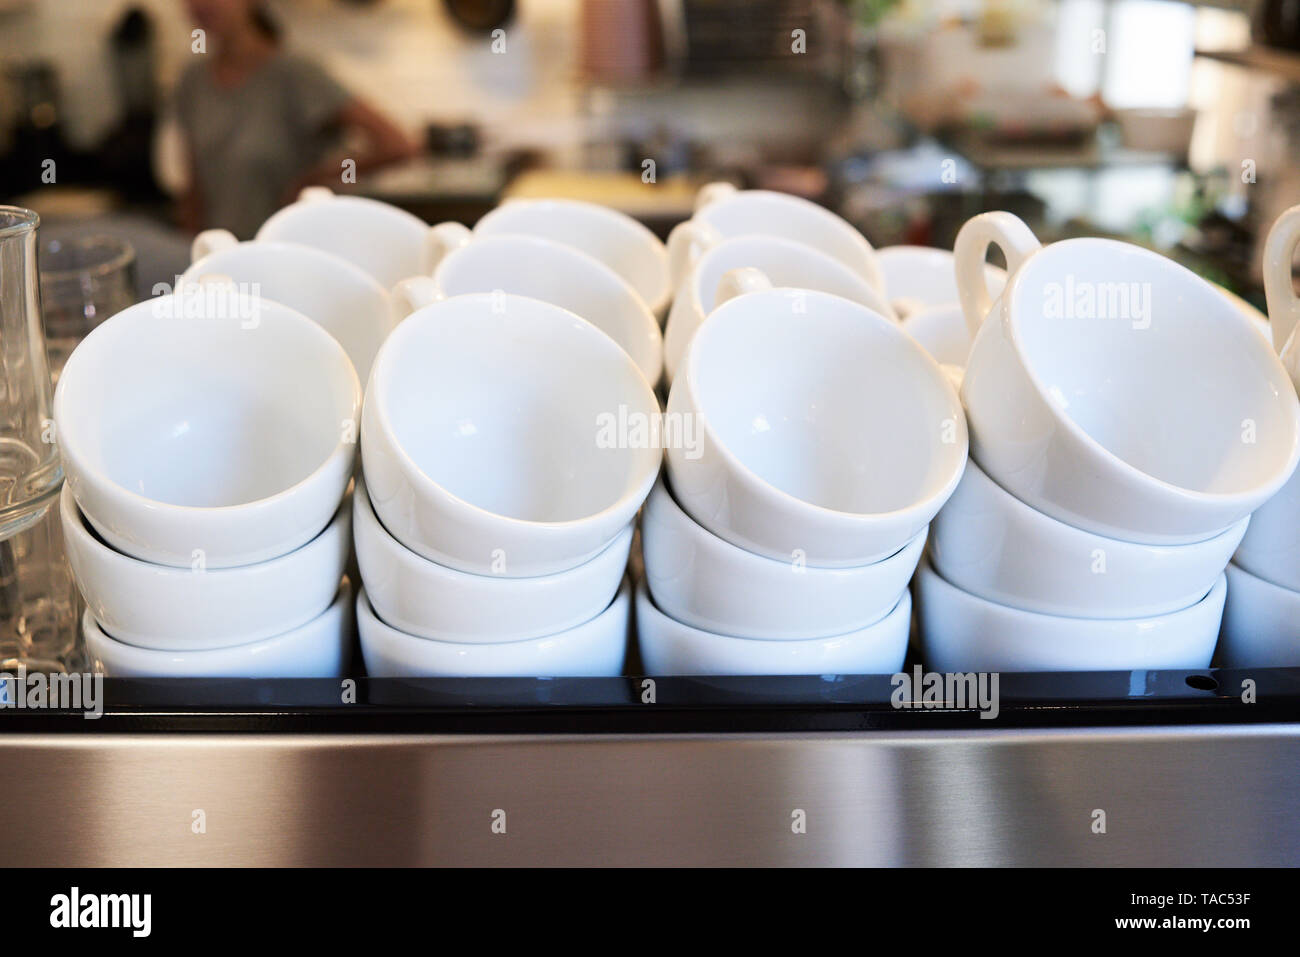 Beaucoup de tasses de café dans un café Banque D'Images